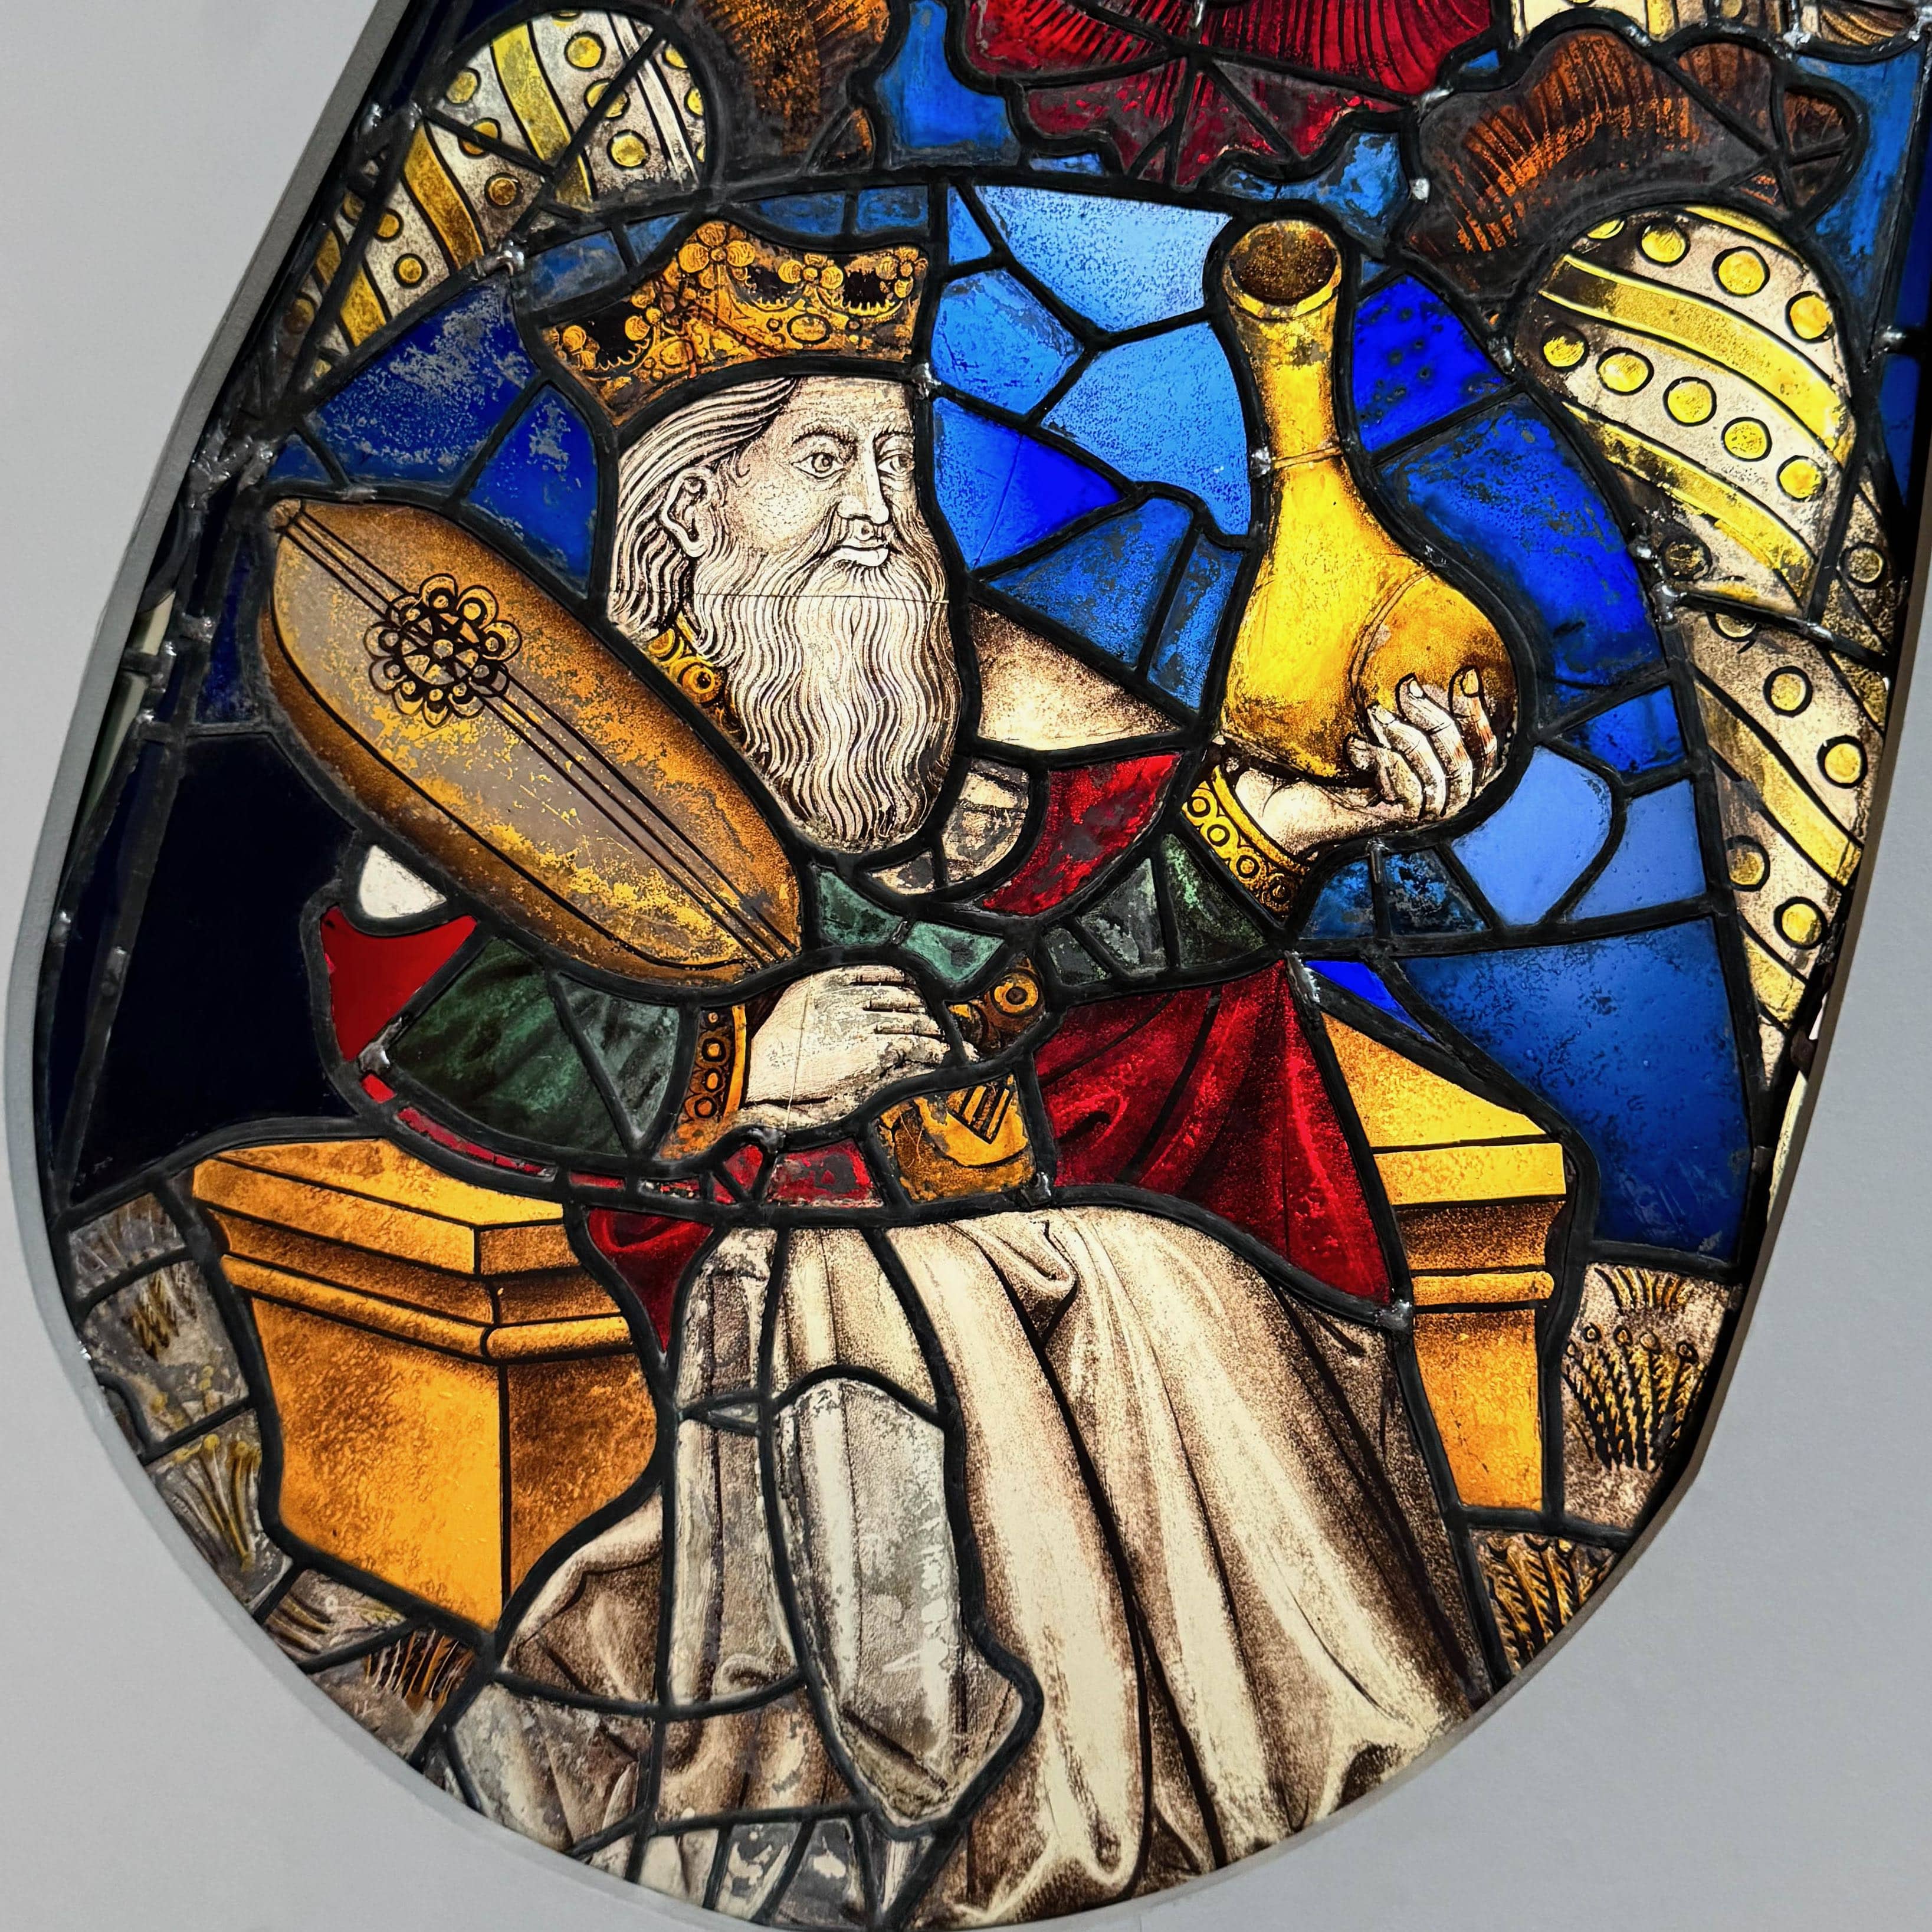 Détail d’un des vitraux de la rosace de la cathédrale d’Angers